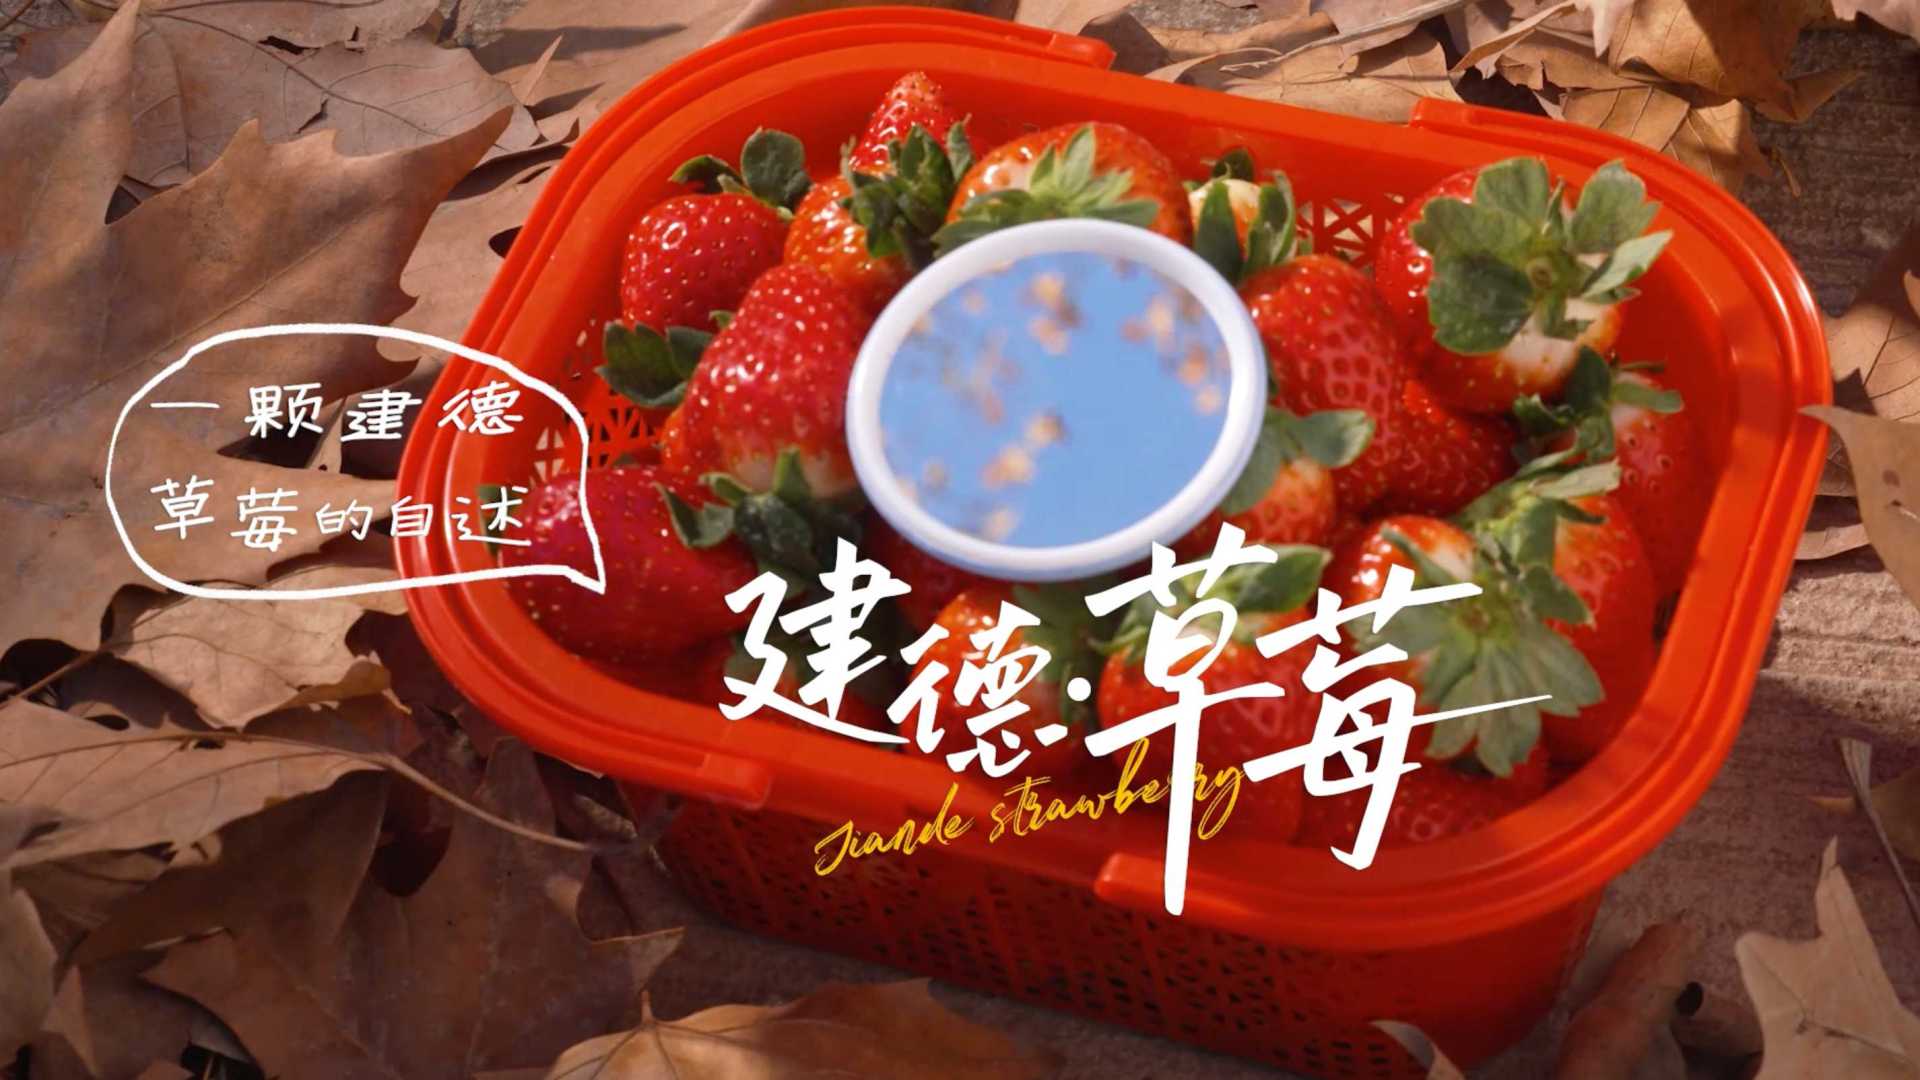 建德市草莓节主题影片《建德·草莓》一颗草莓的自述